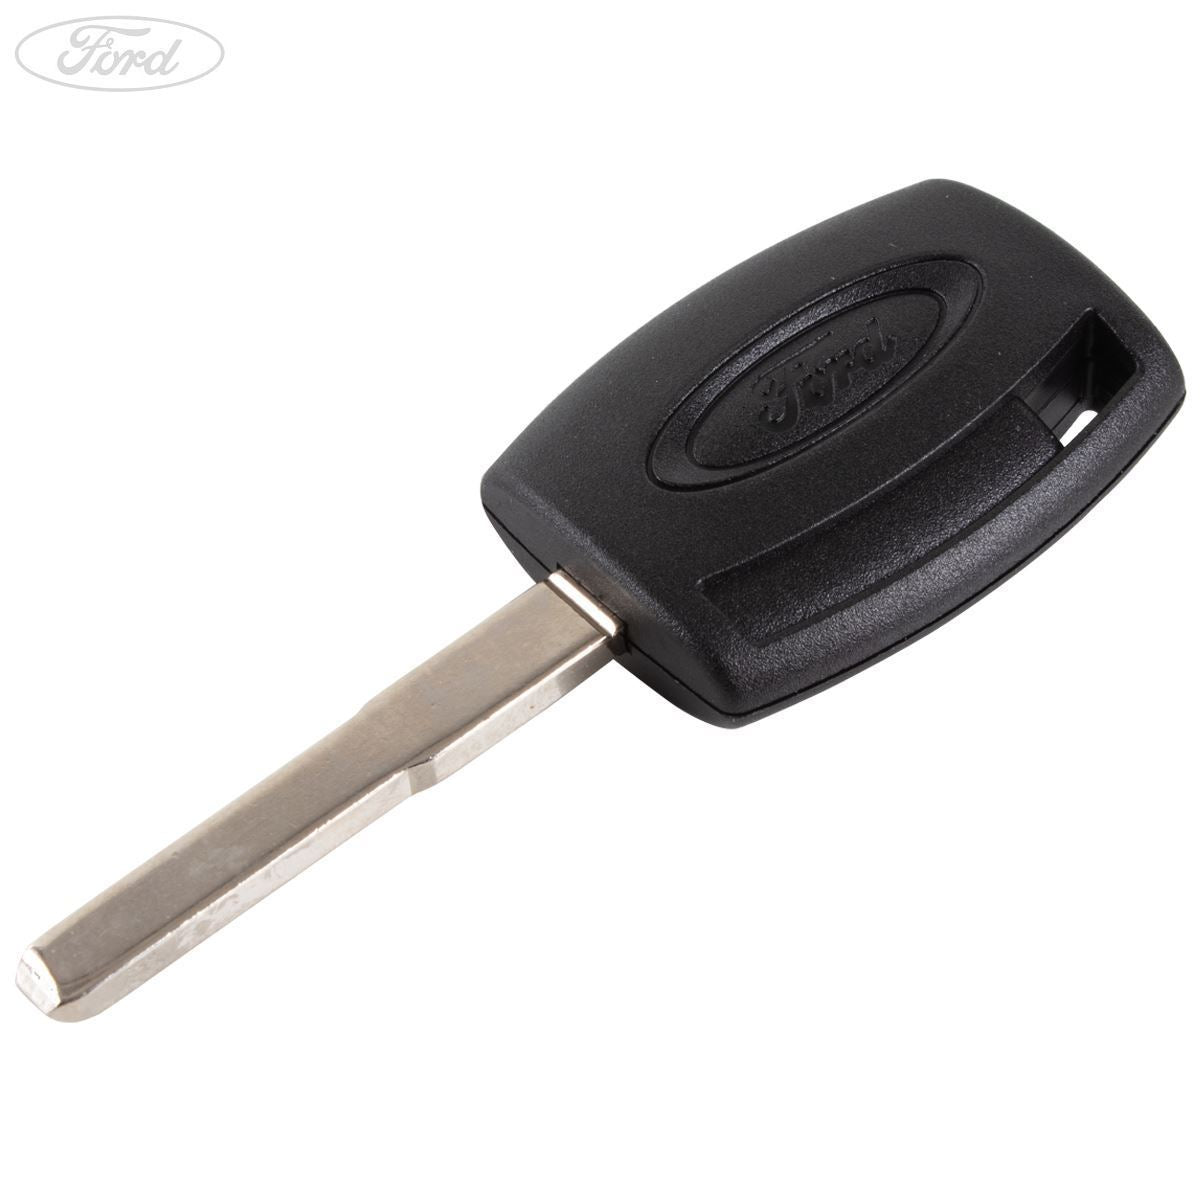 KUNIO Autoschlüssel Schutzhülle Passt für Ford Kuga Focus RS MK3 MK4 Fiesta  C-Max Galaxy Escape Ecosport Mondeo Leder Schlüsselhülle Schlüsselanhänger